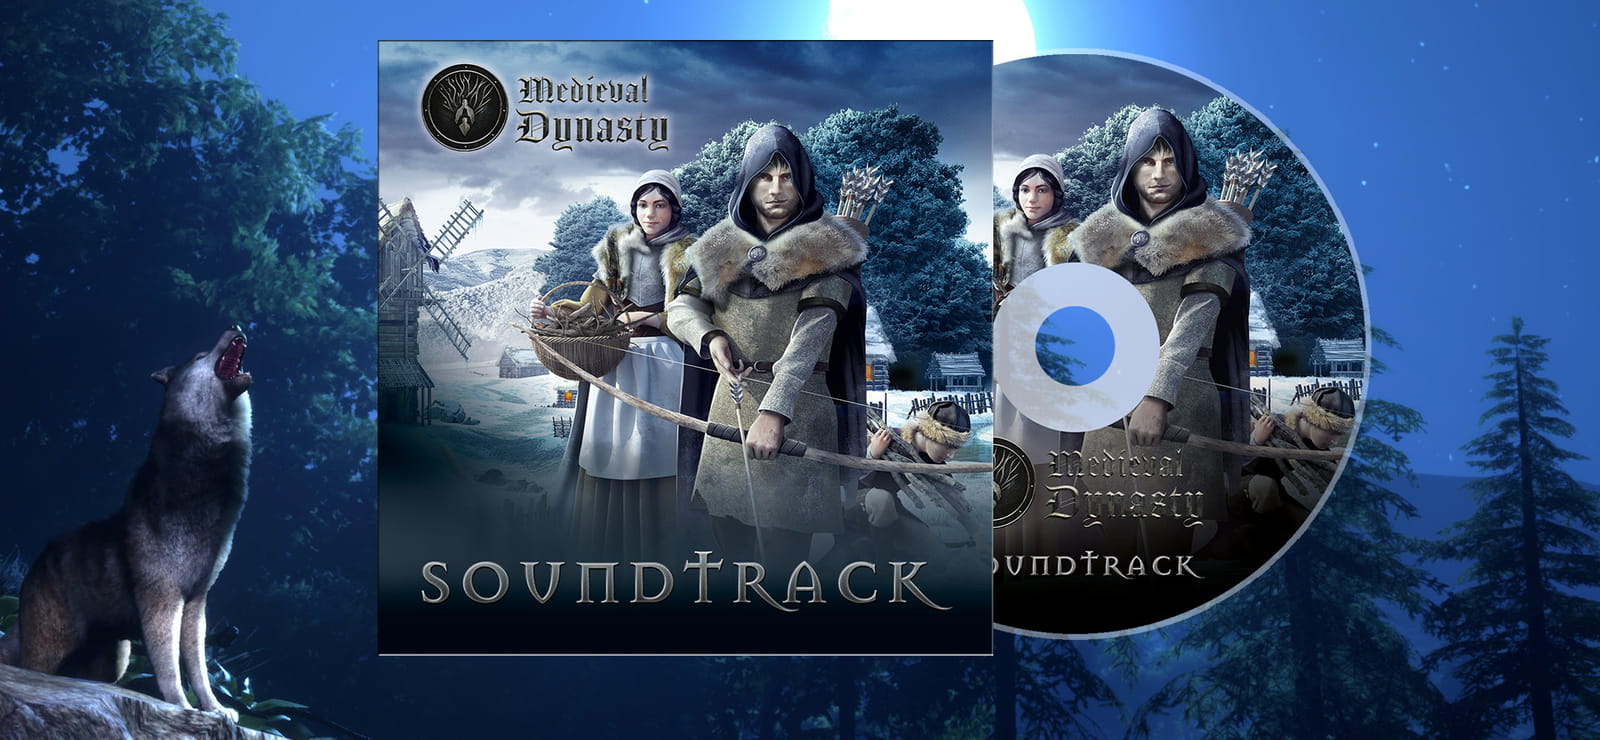 Medieval Dynasty - Digital Supporter Pack